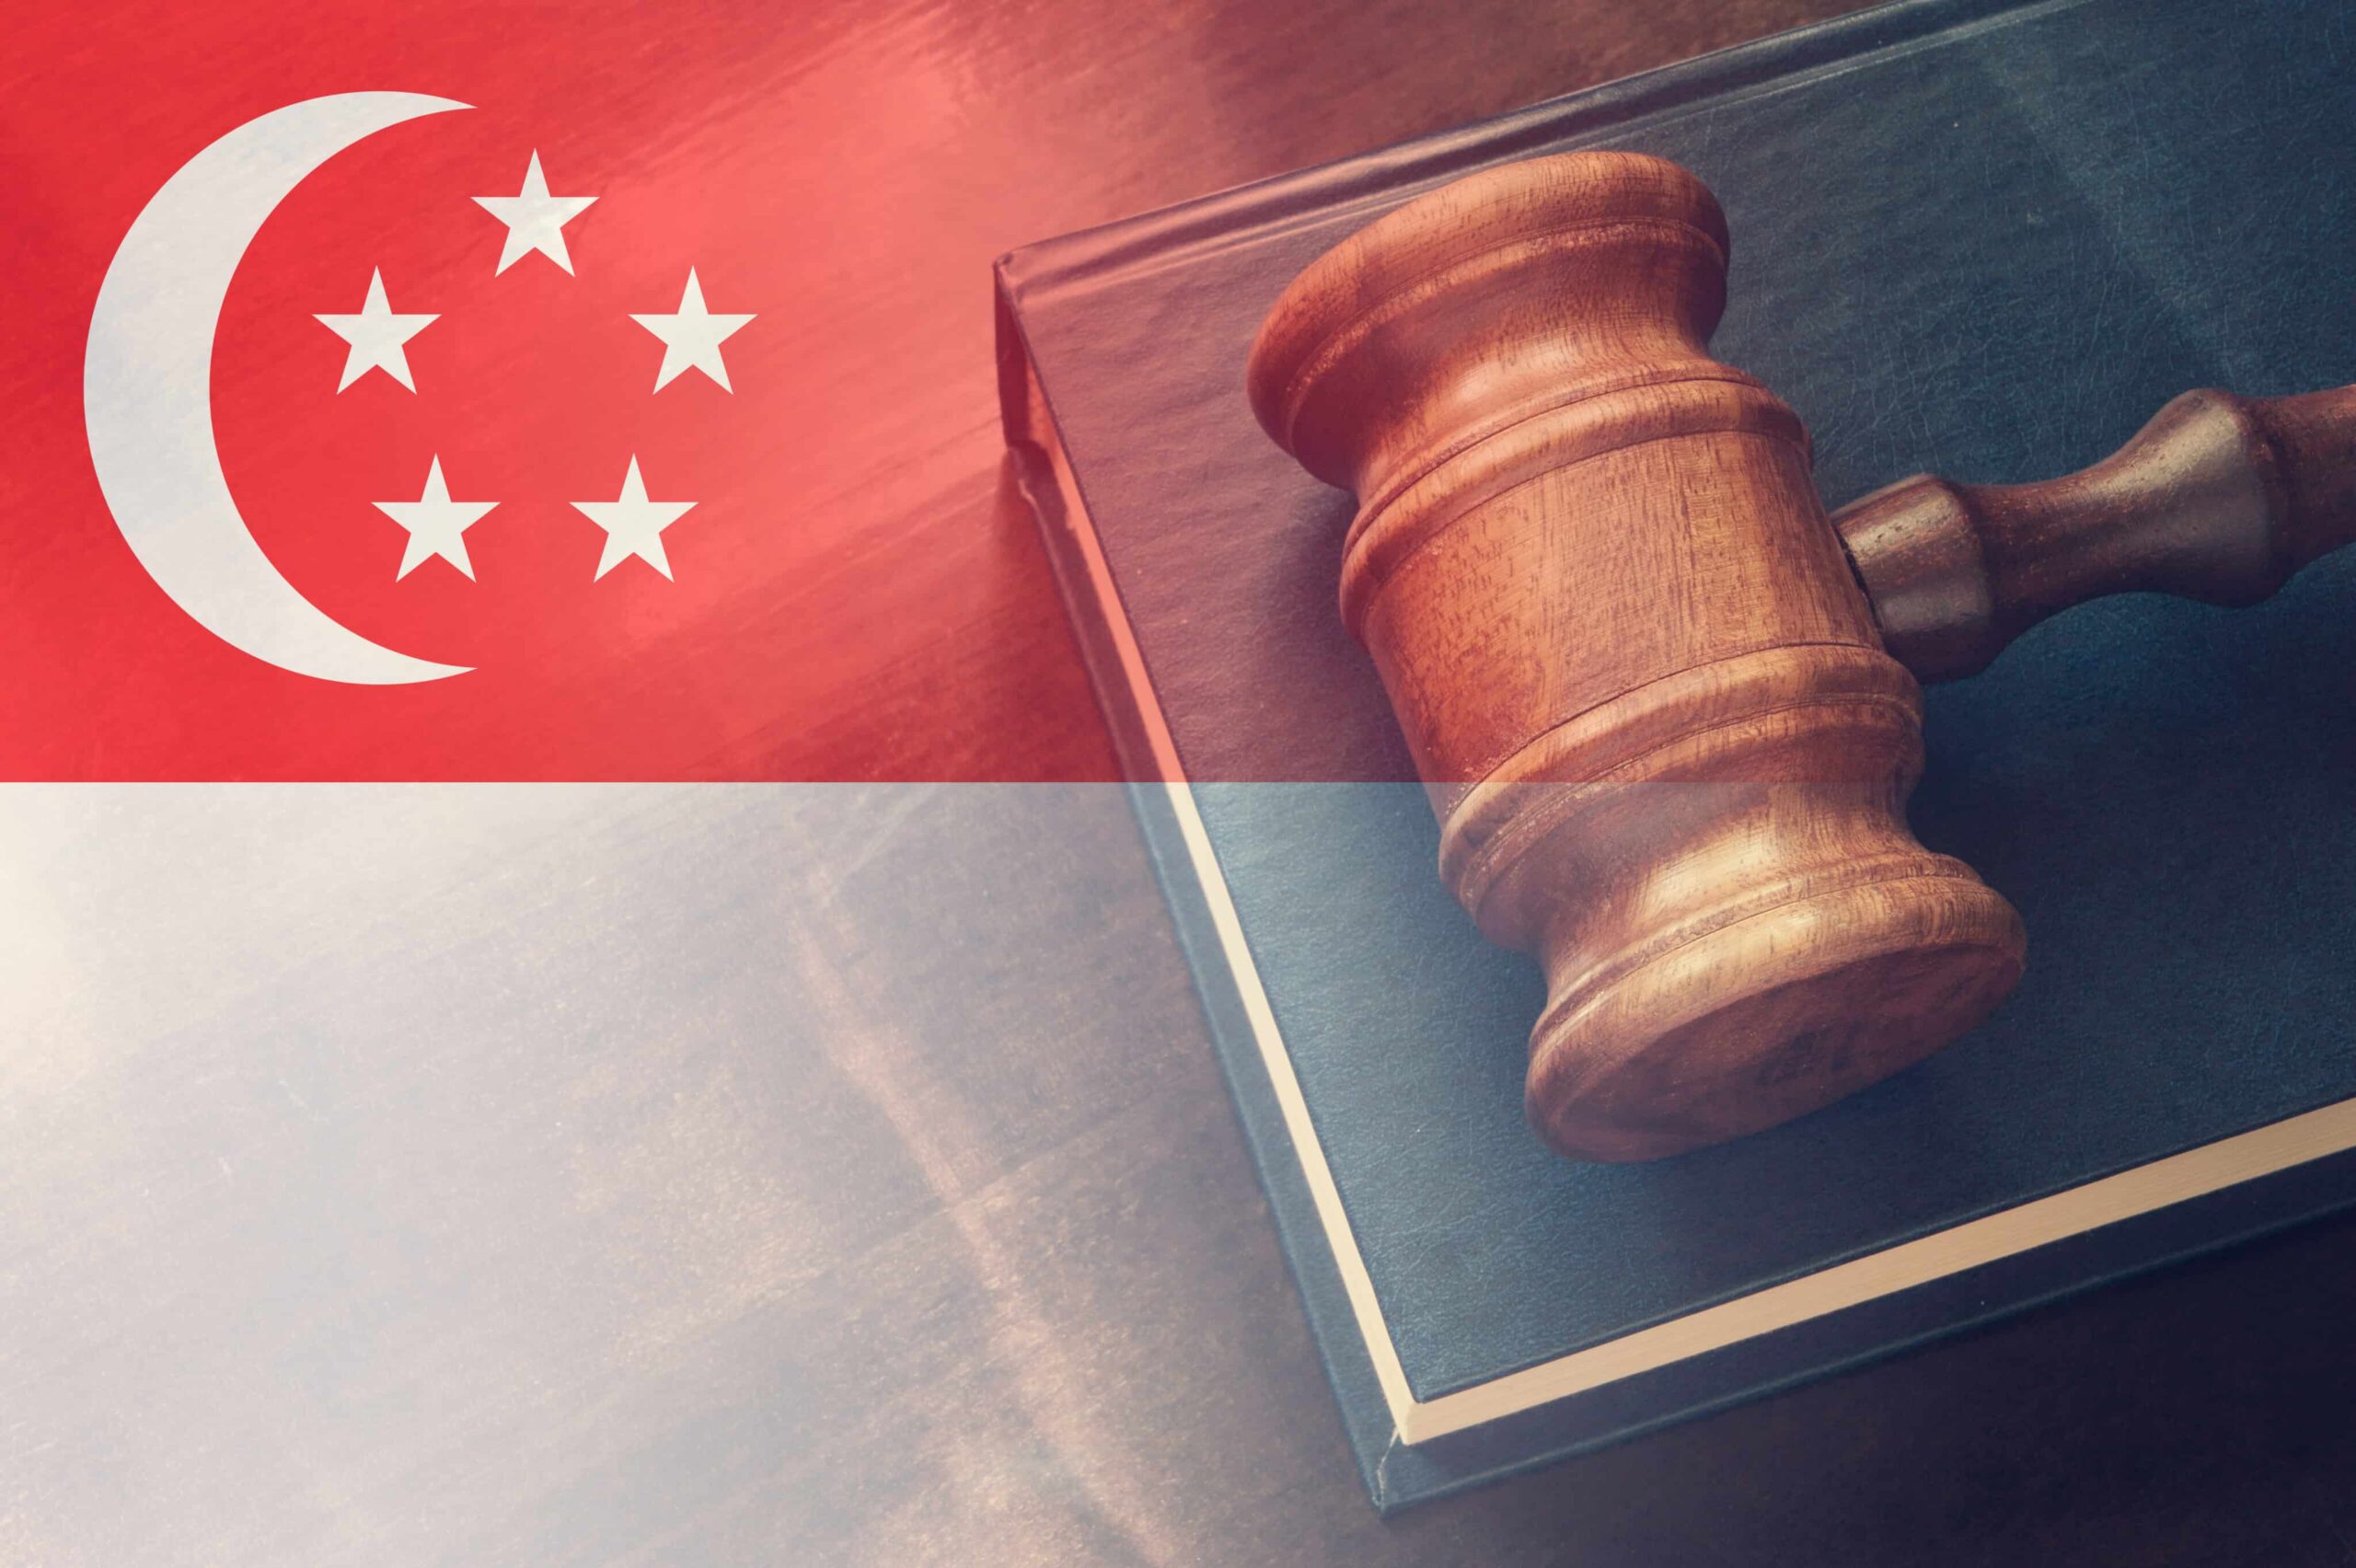 싱가포르, 대마초 관련 혐의로 XNUMX주 만에 두 번째 남성 교수형